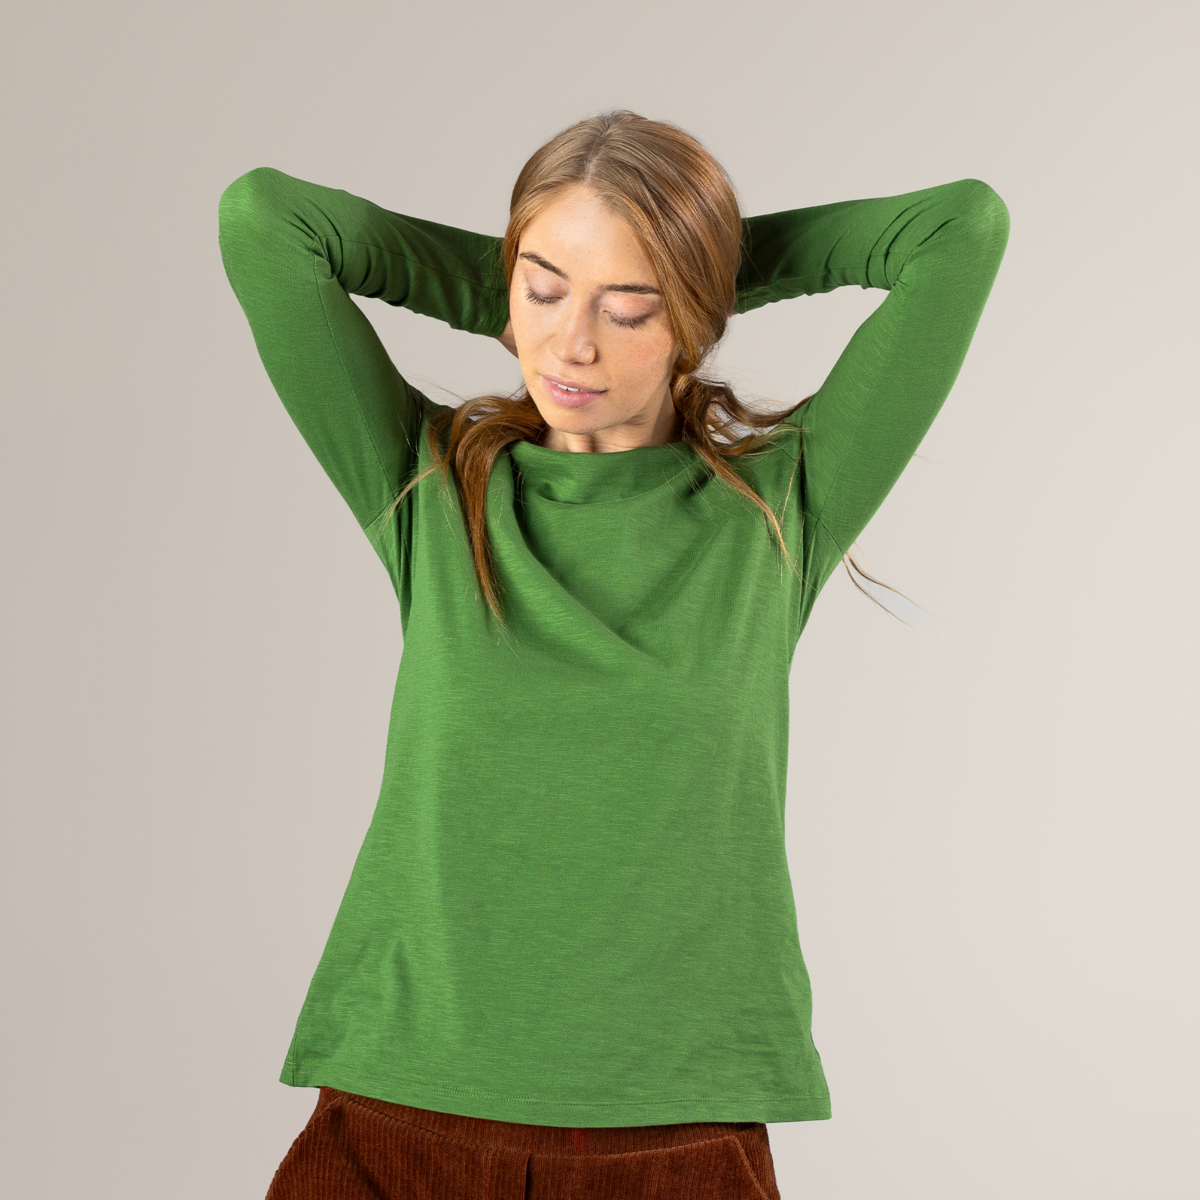 Green Women Long-sleeved shirt